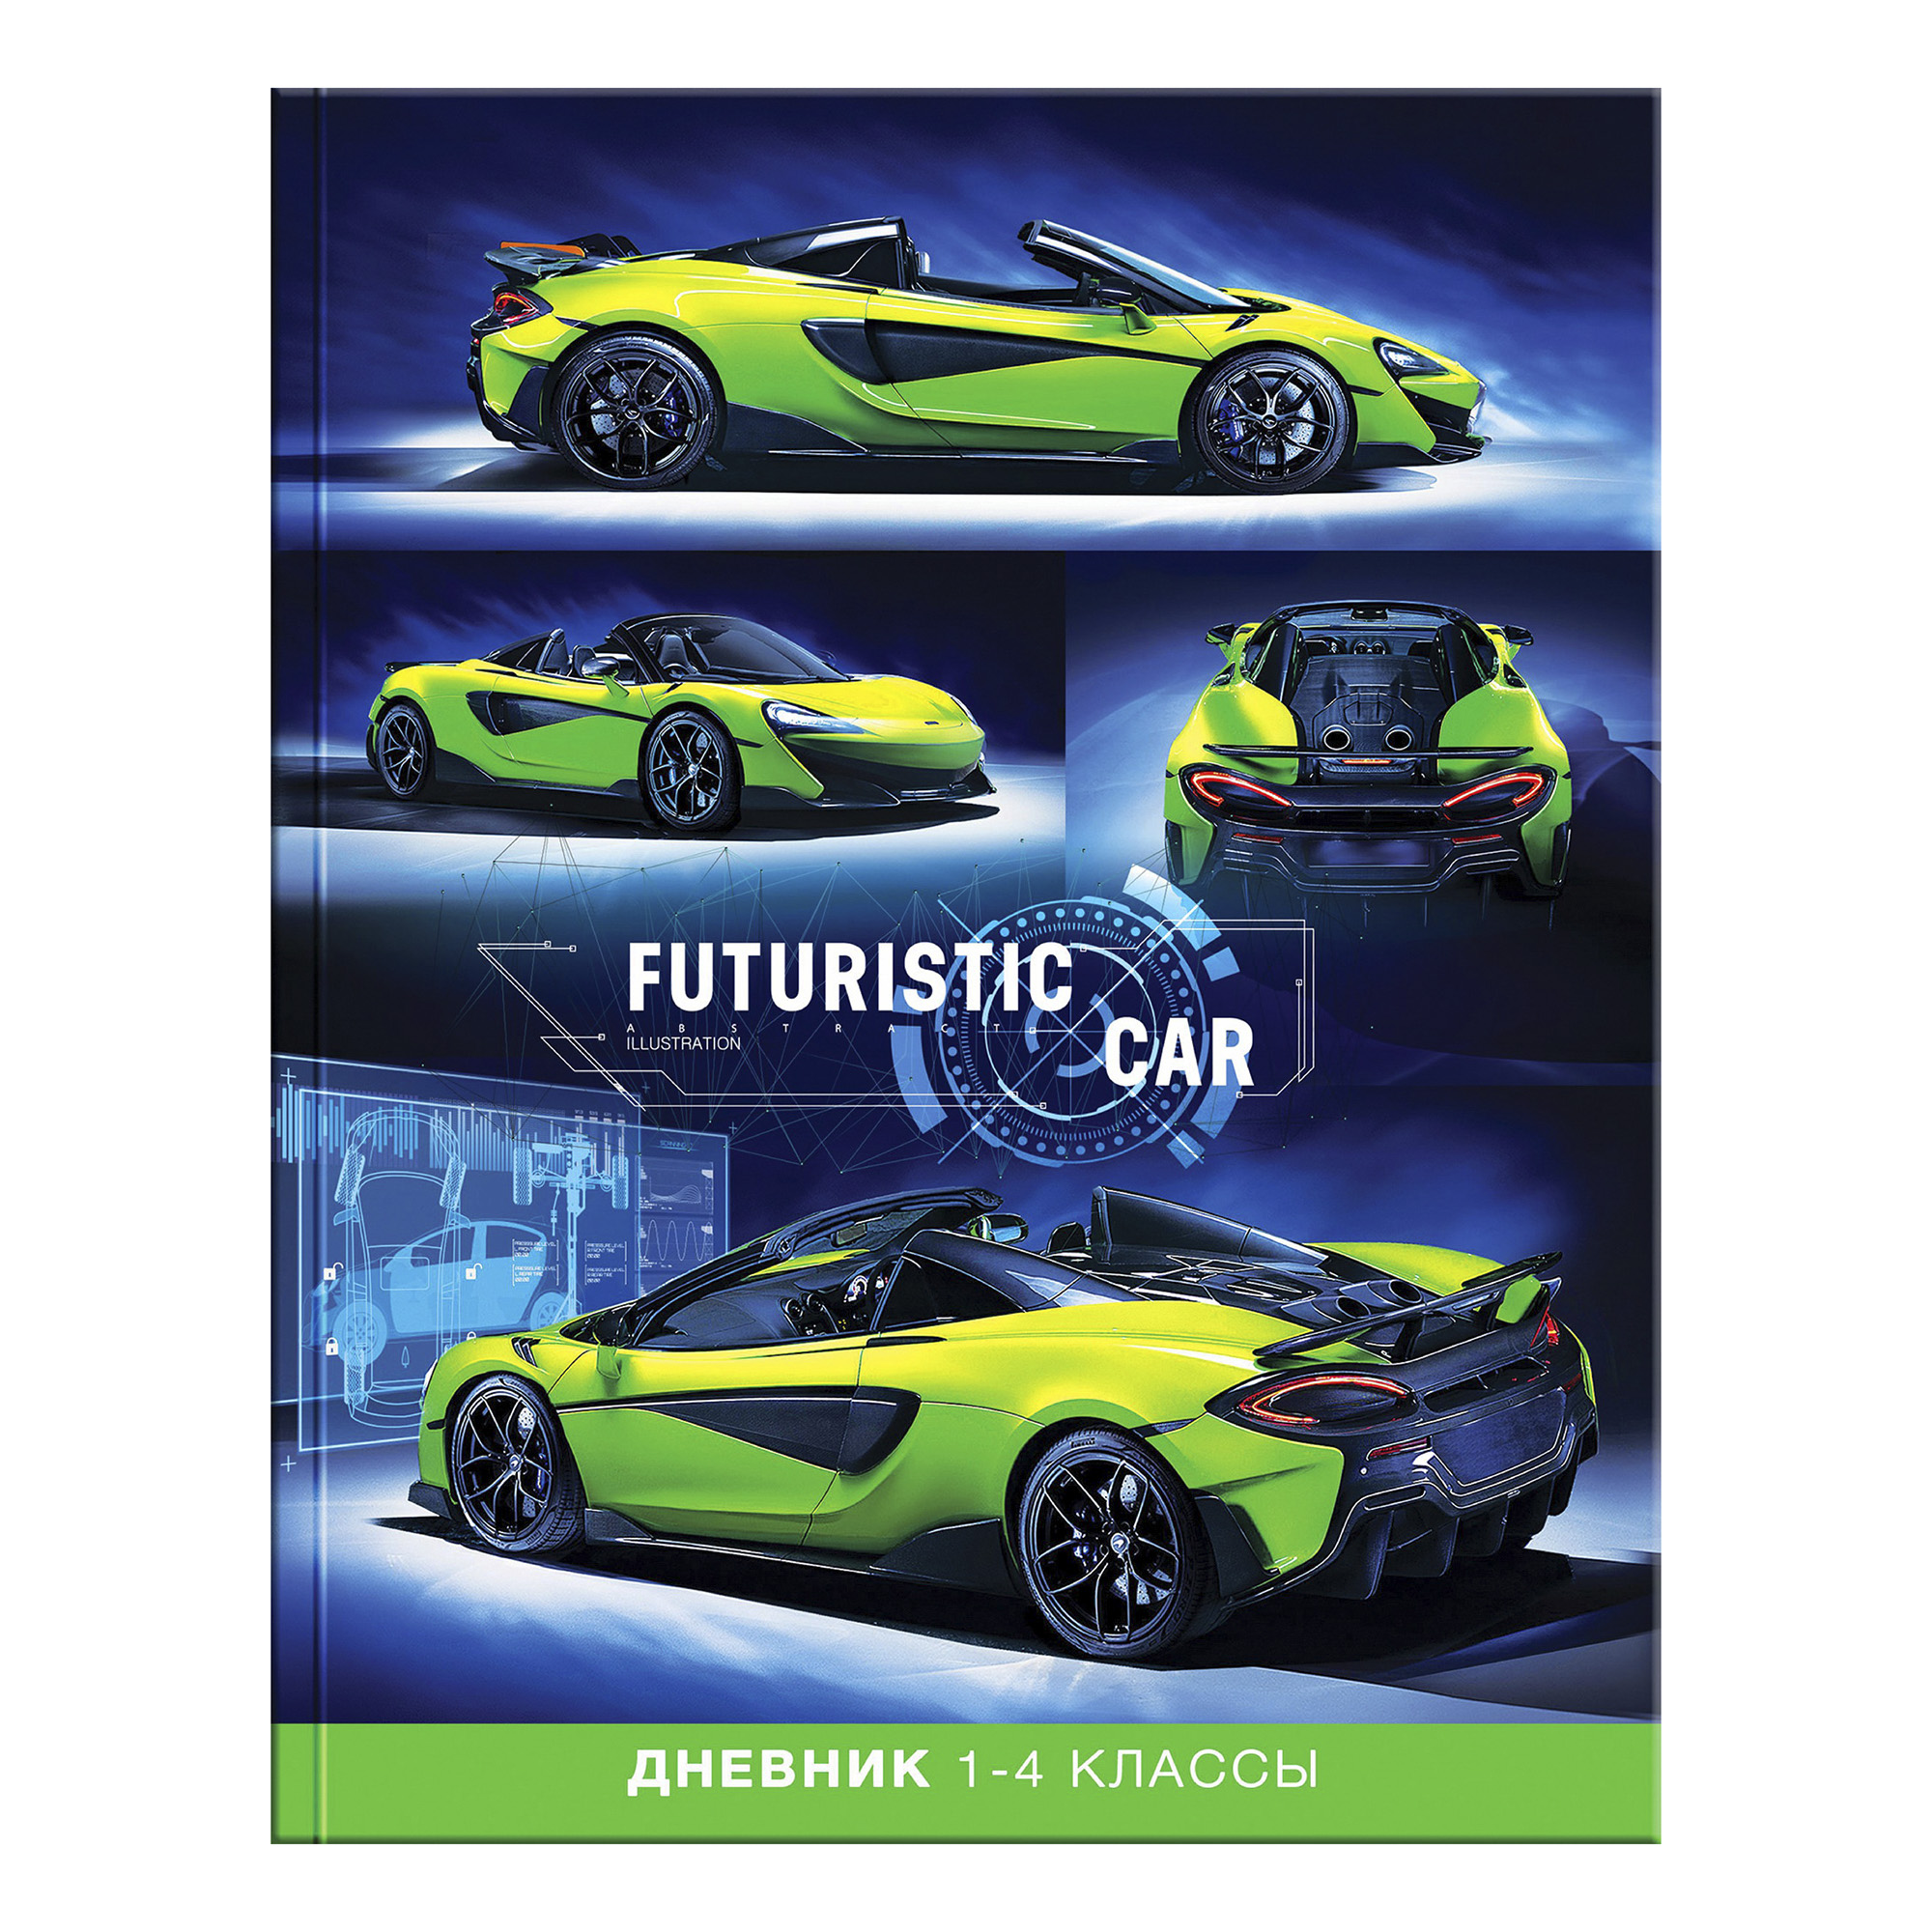 Дневник ArtSpace Авто Futuristic car для 1-4 классов А5 48 листов